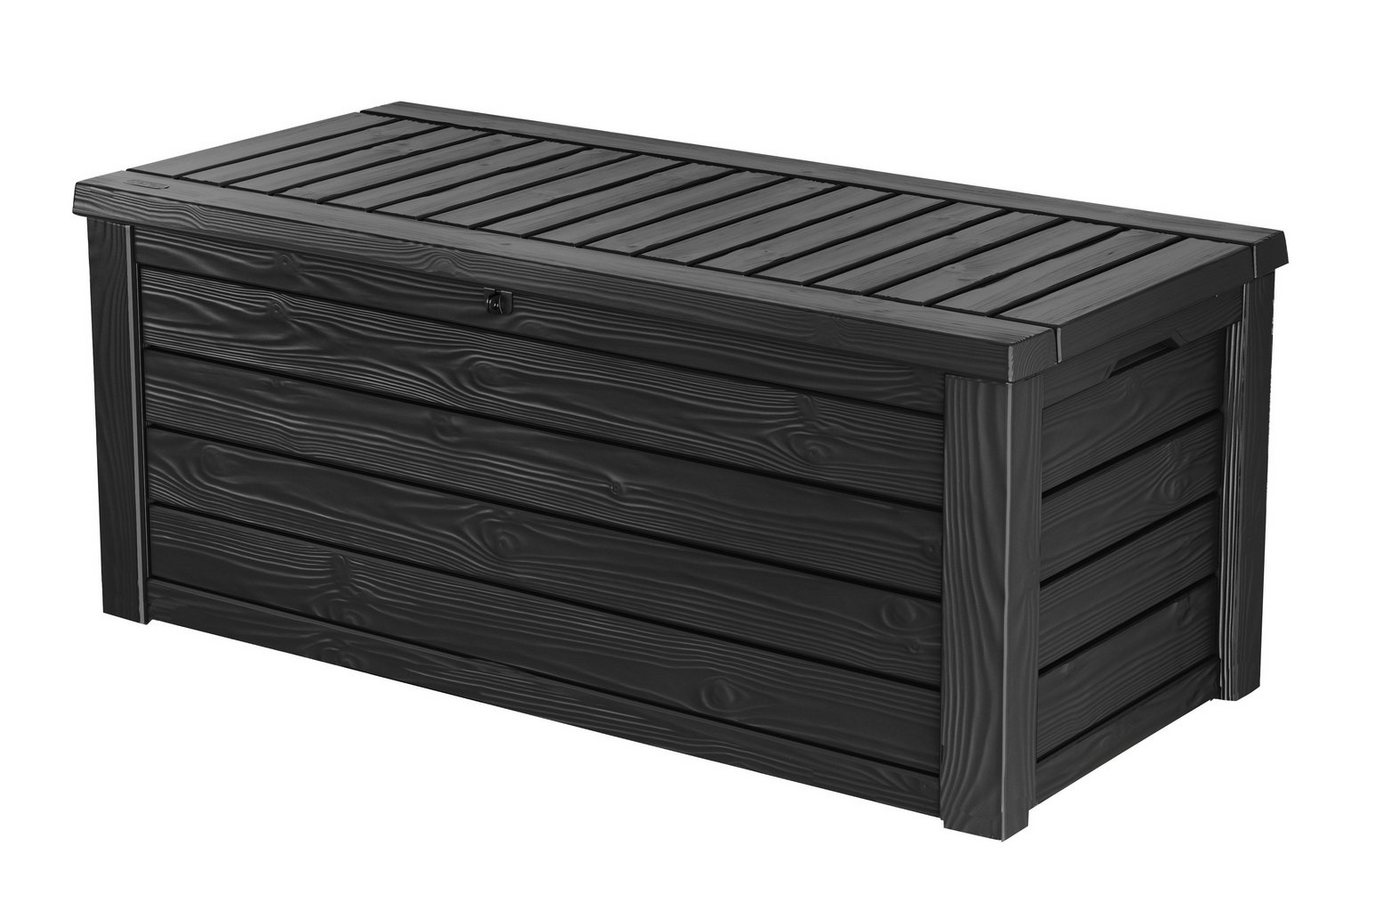 Keter Kissenbox Westwood Aufbewahrungsbox 568 Liter für Terrassenmöbel aus Kunststoff, Auflagenbox Gartenbox anthrazit Holz Optik mit Gasdruckfedern von Keter